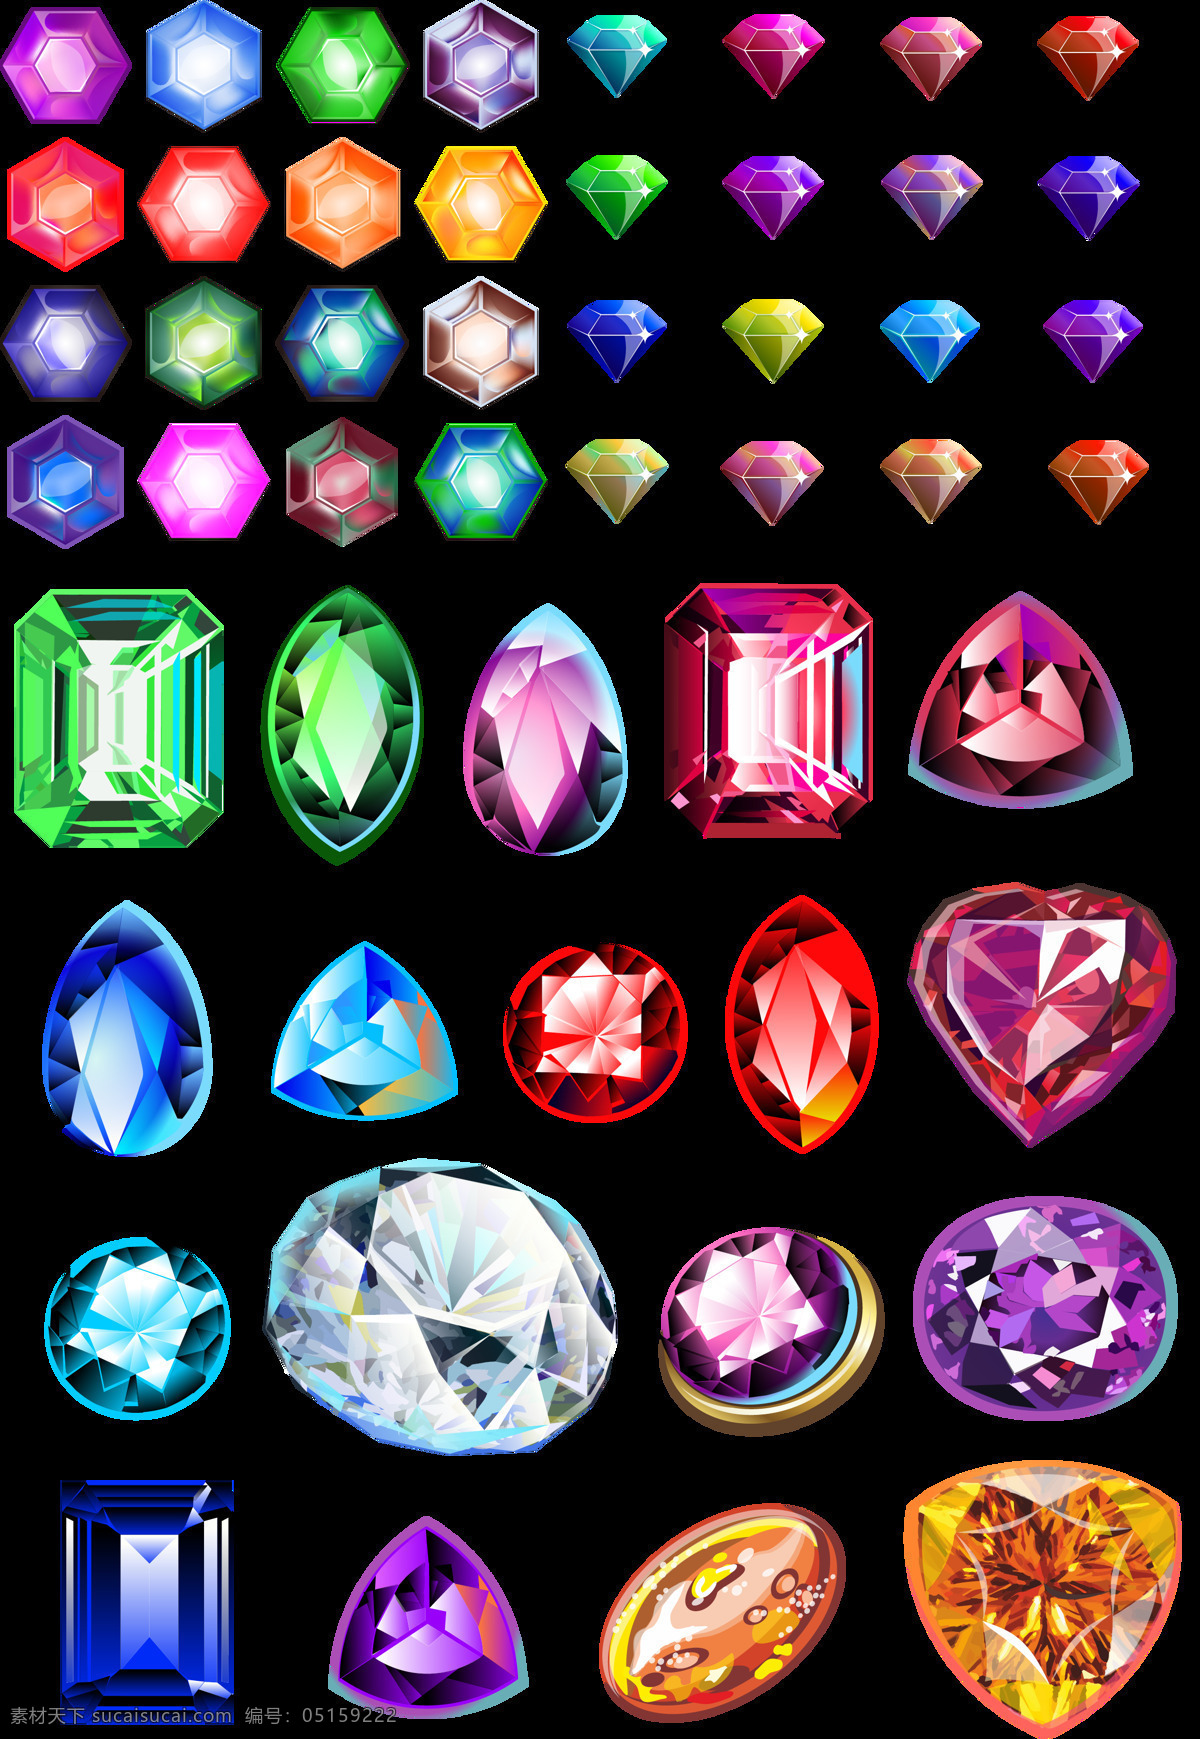 组 彩色 钻石 设计素材 宝石 装饰 首饰 切割 png素材 平面 六角钻石 六边宝石